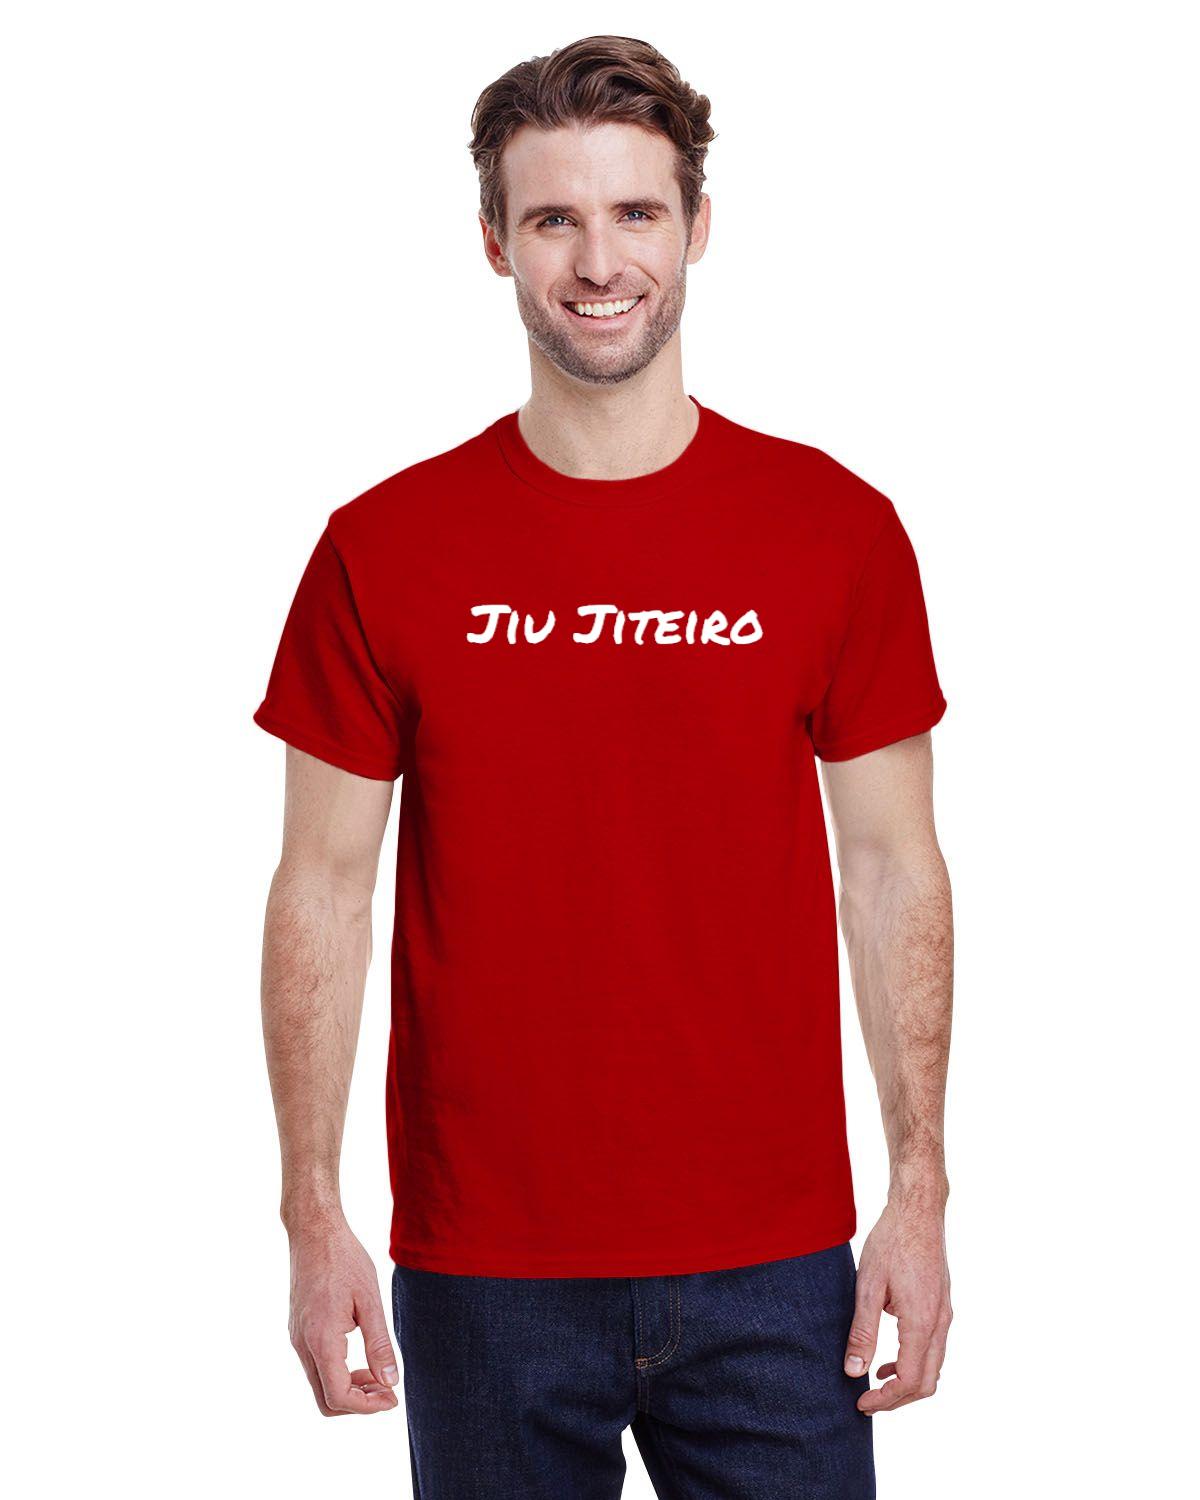 Jiu Jiteiro Mens T-Shirt